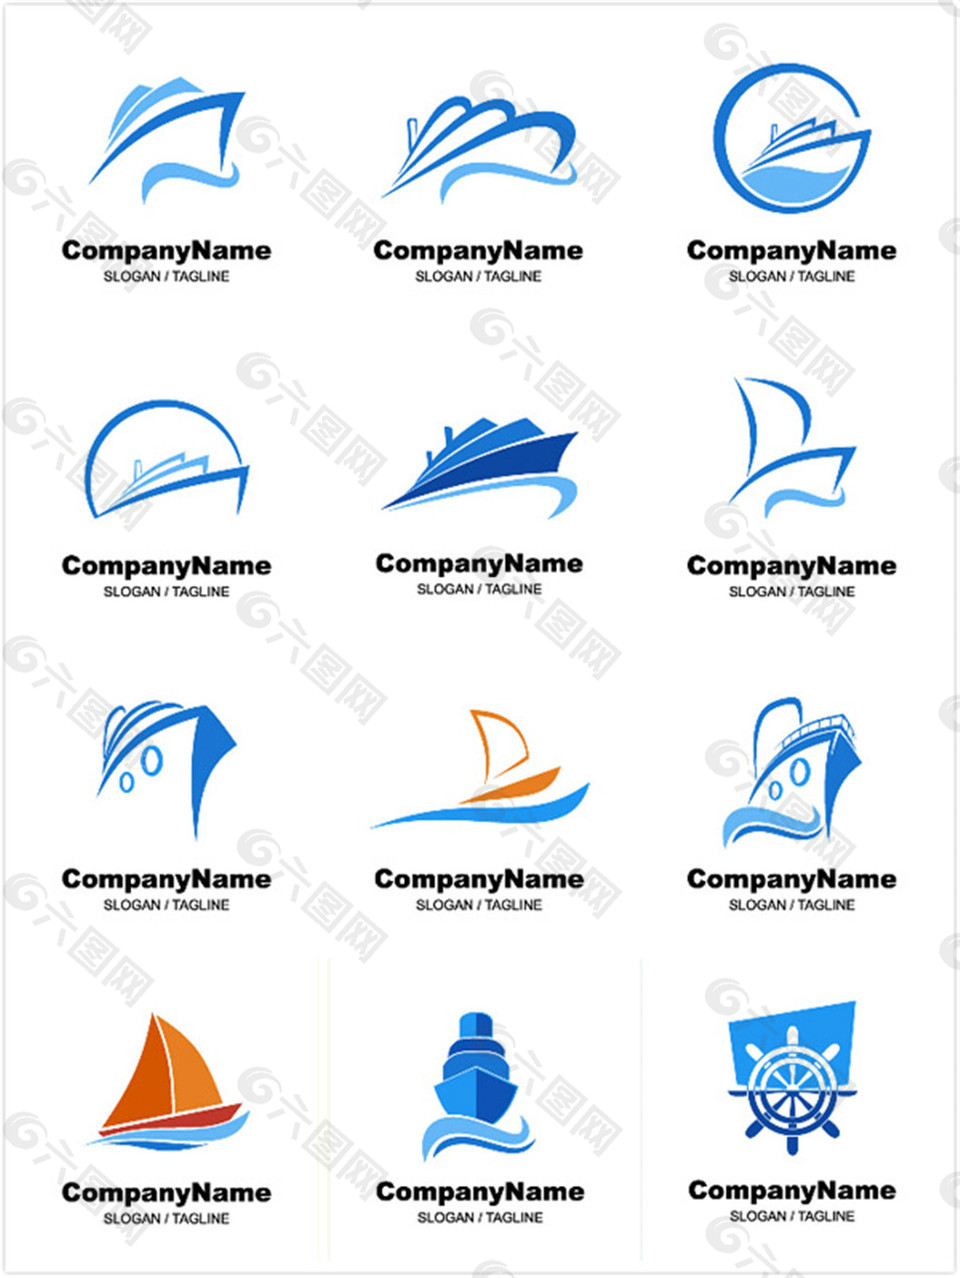 船舶商标设计